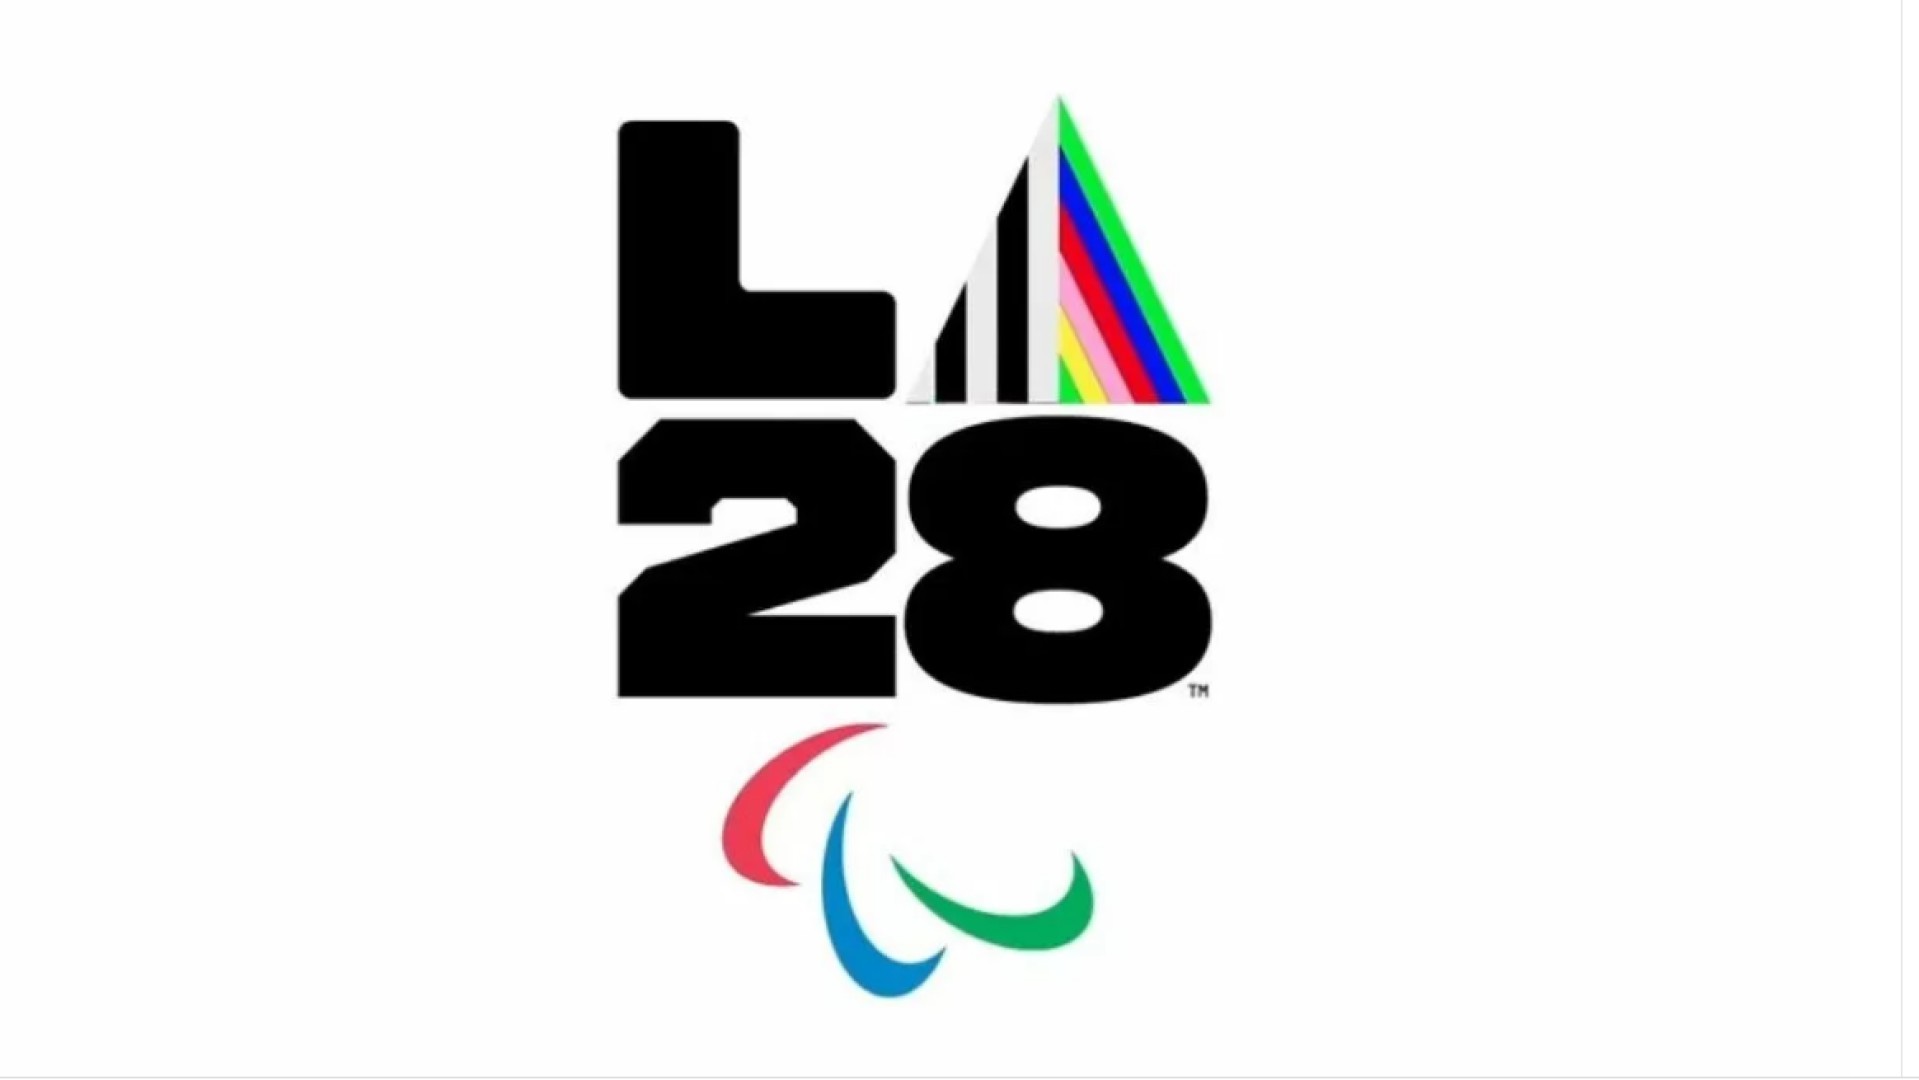 La vela non rientra nel programma delle Paralimpiadi di Los Angeles 2028